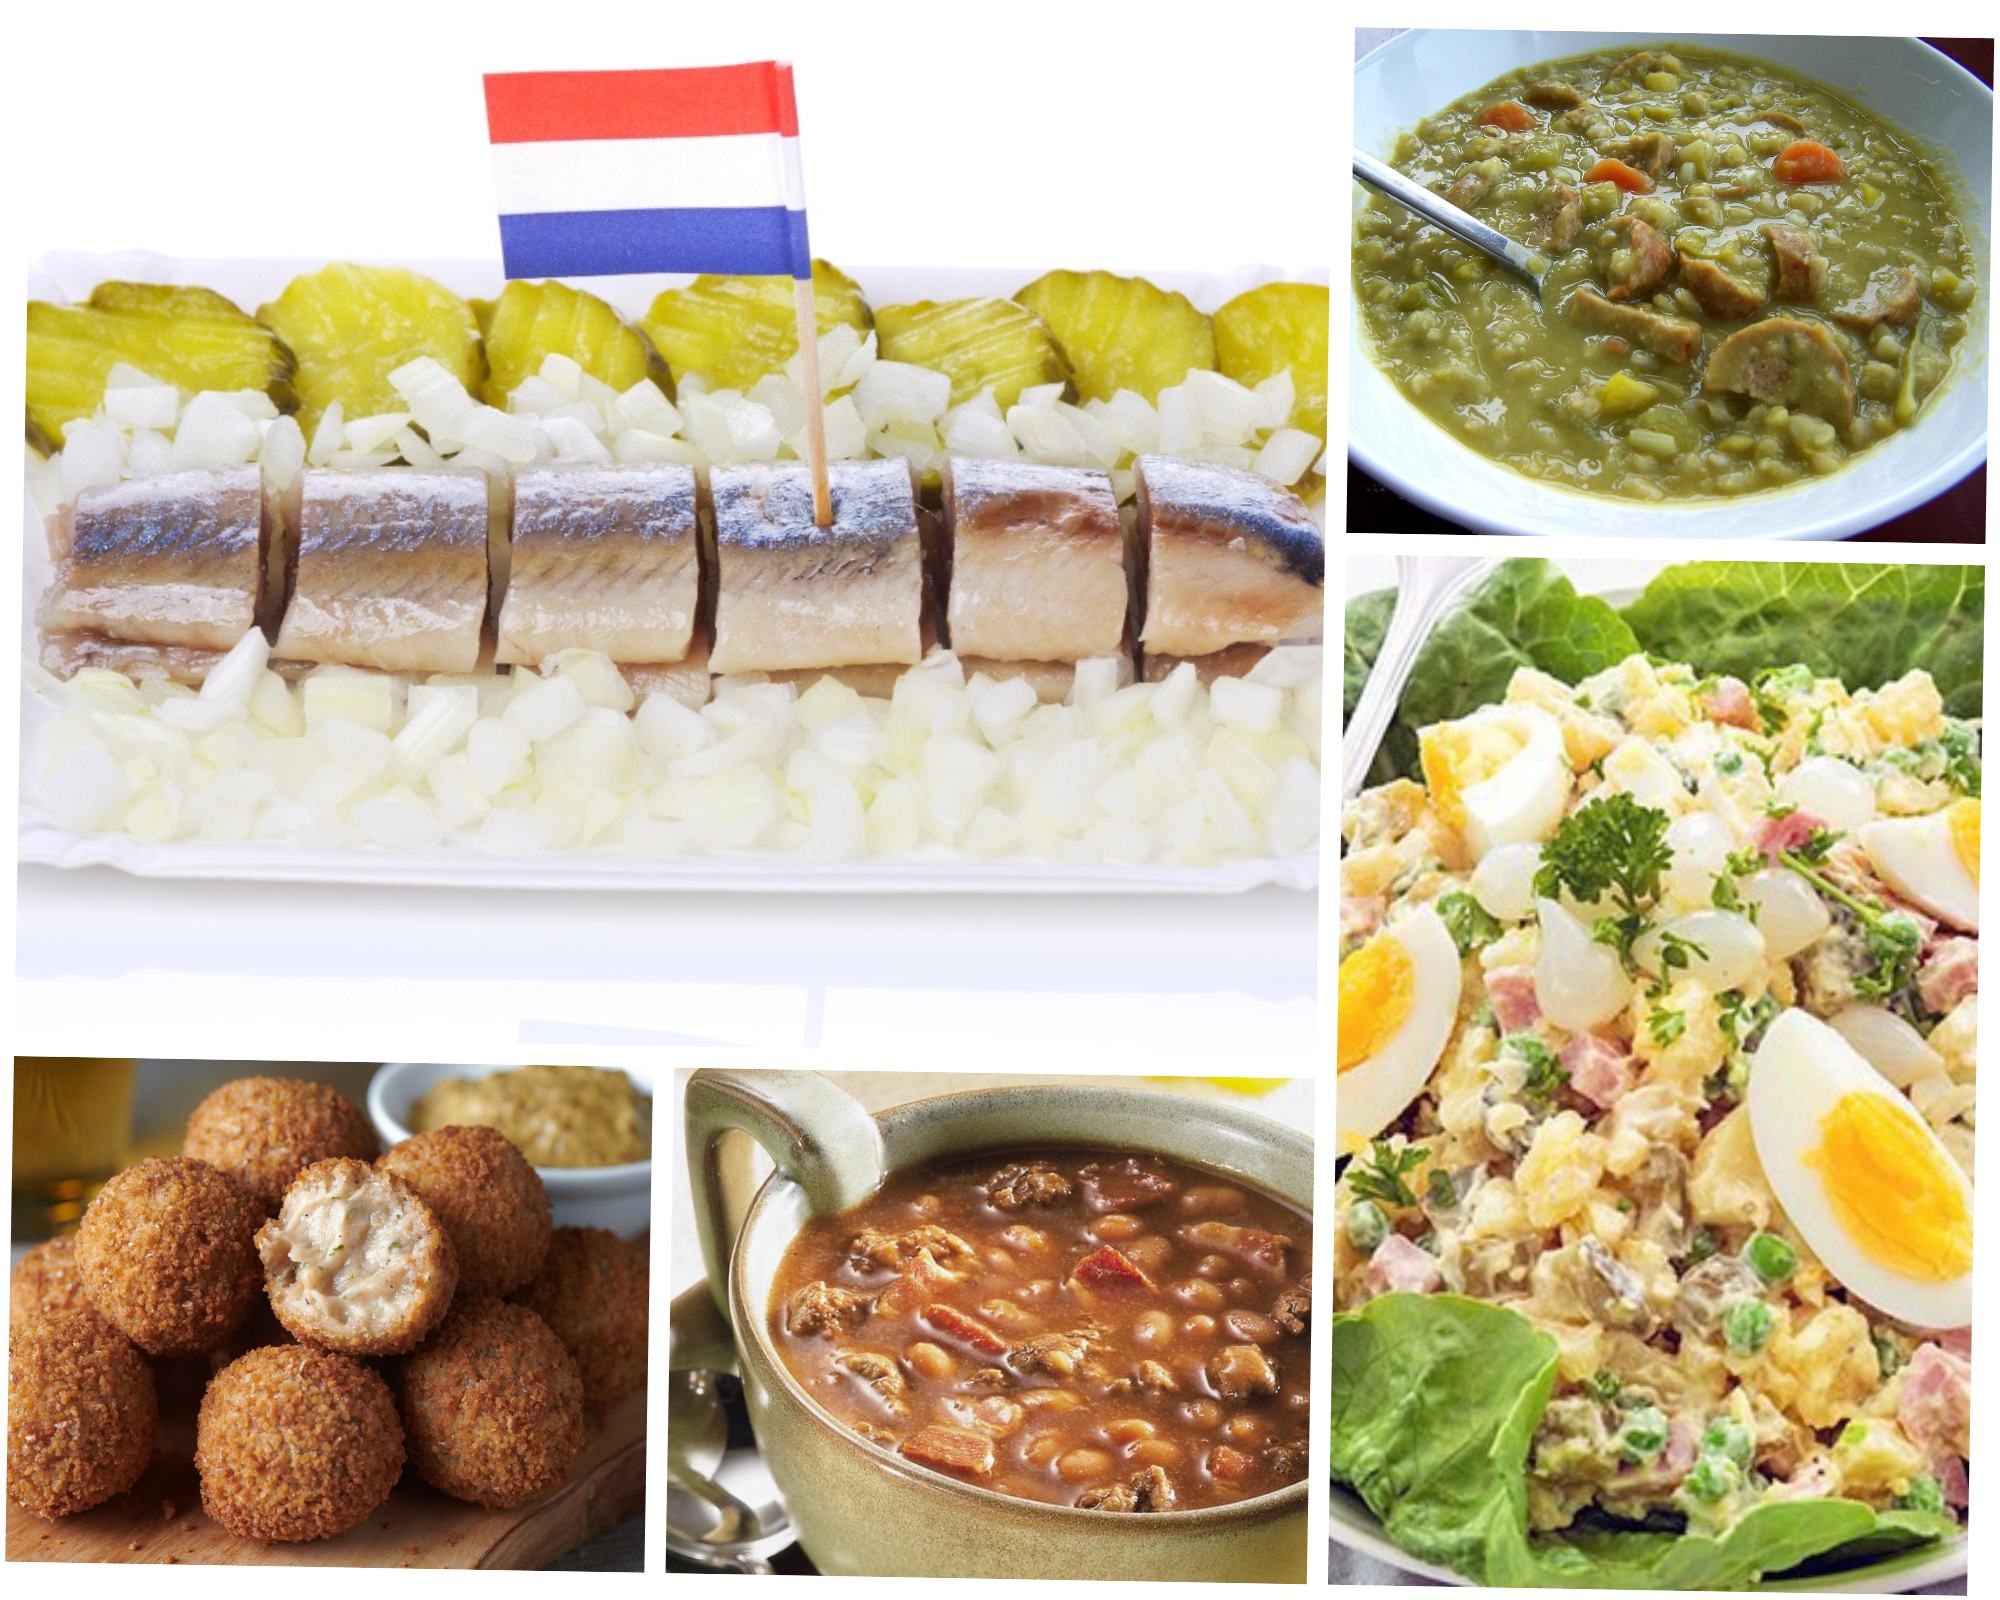 Hollandse nieuwe haring, Erwtensoep, Brown bean soup, Bitterballen, Huzarensalade traditional food netherlands